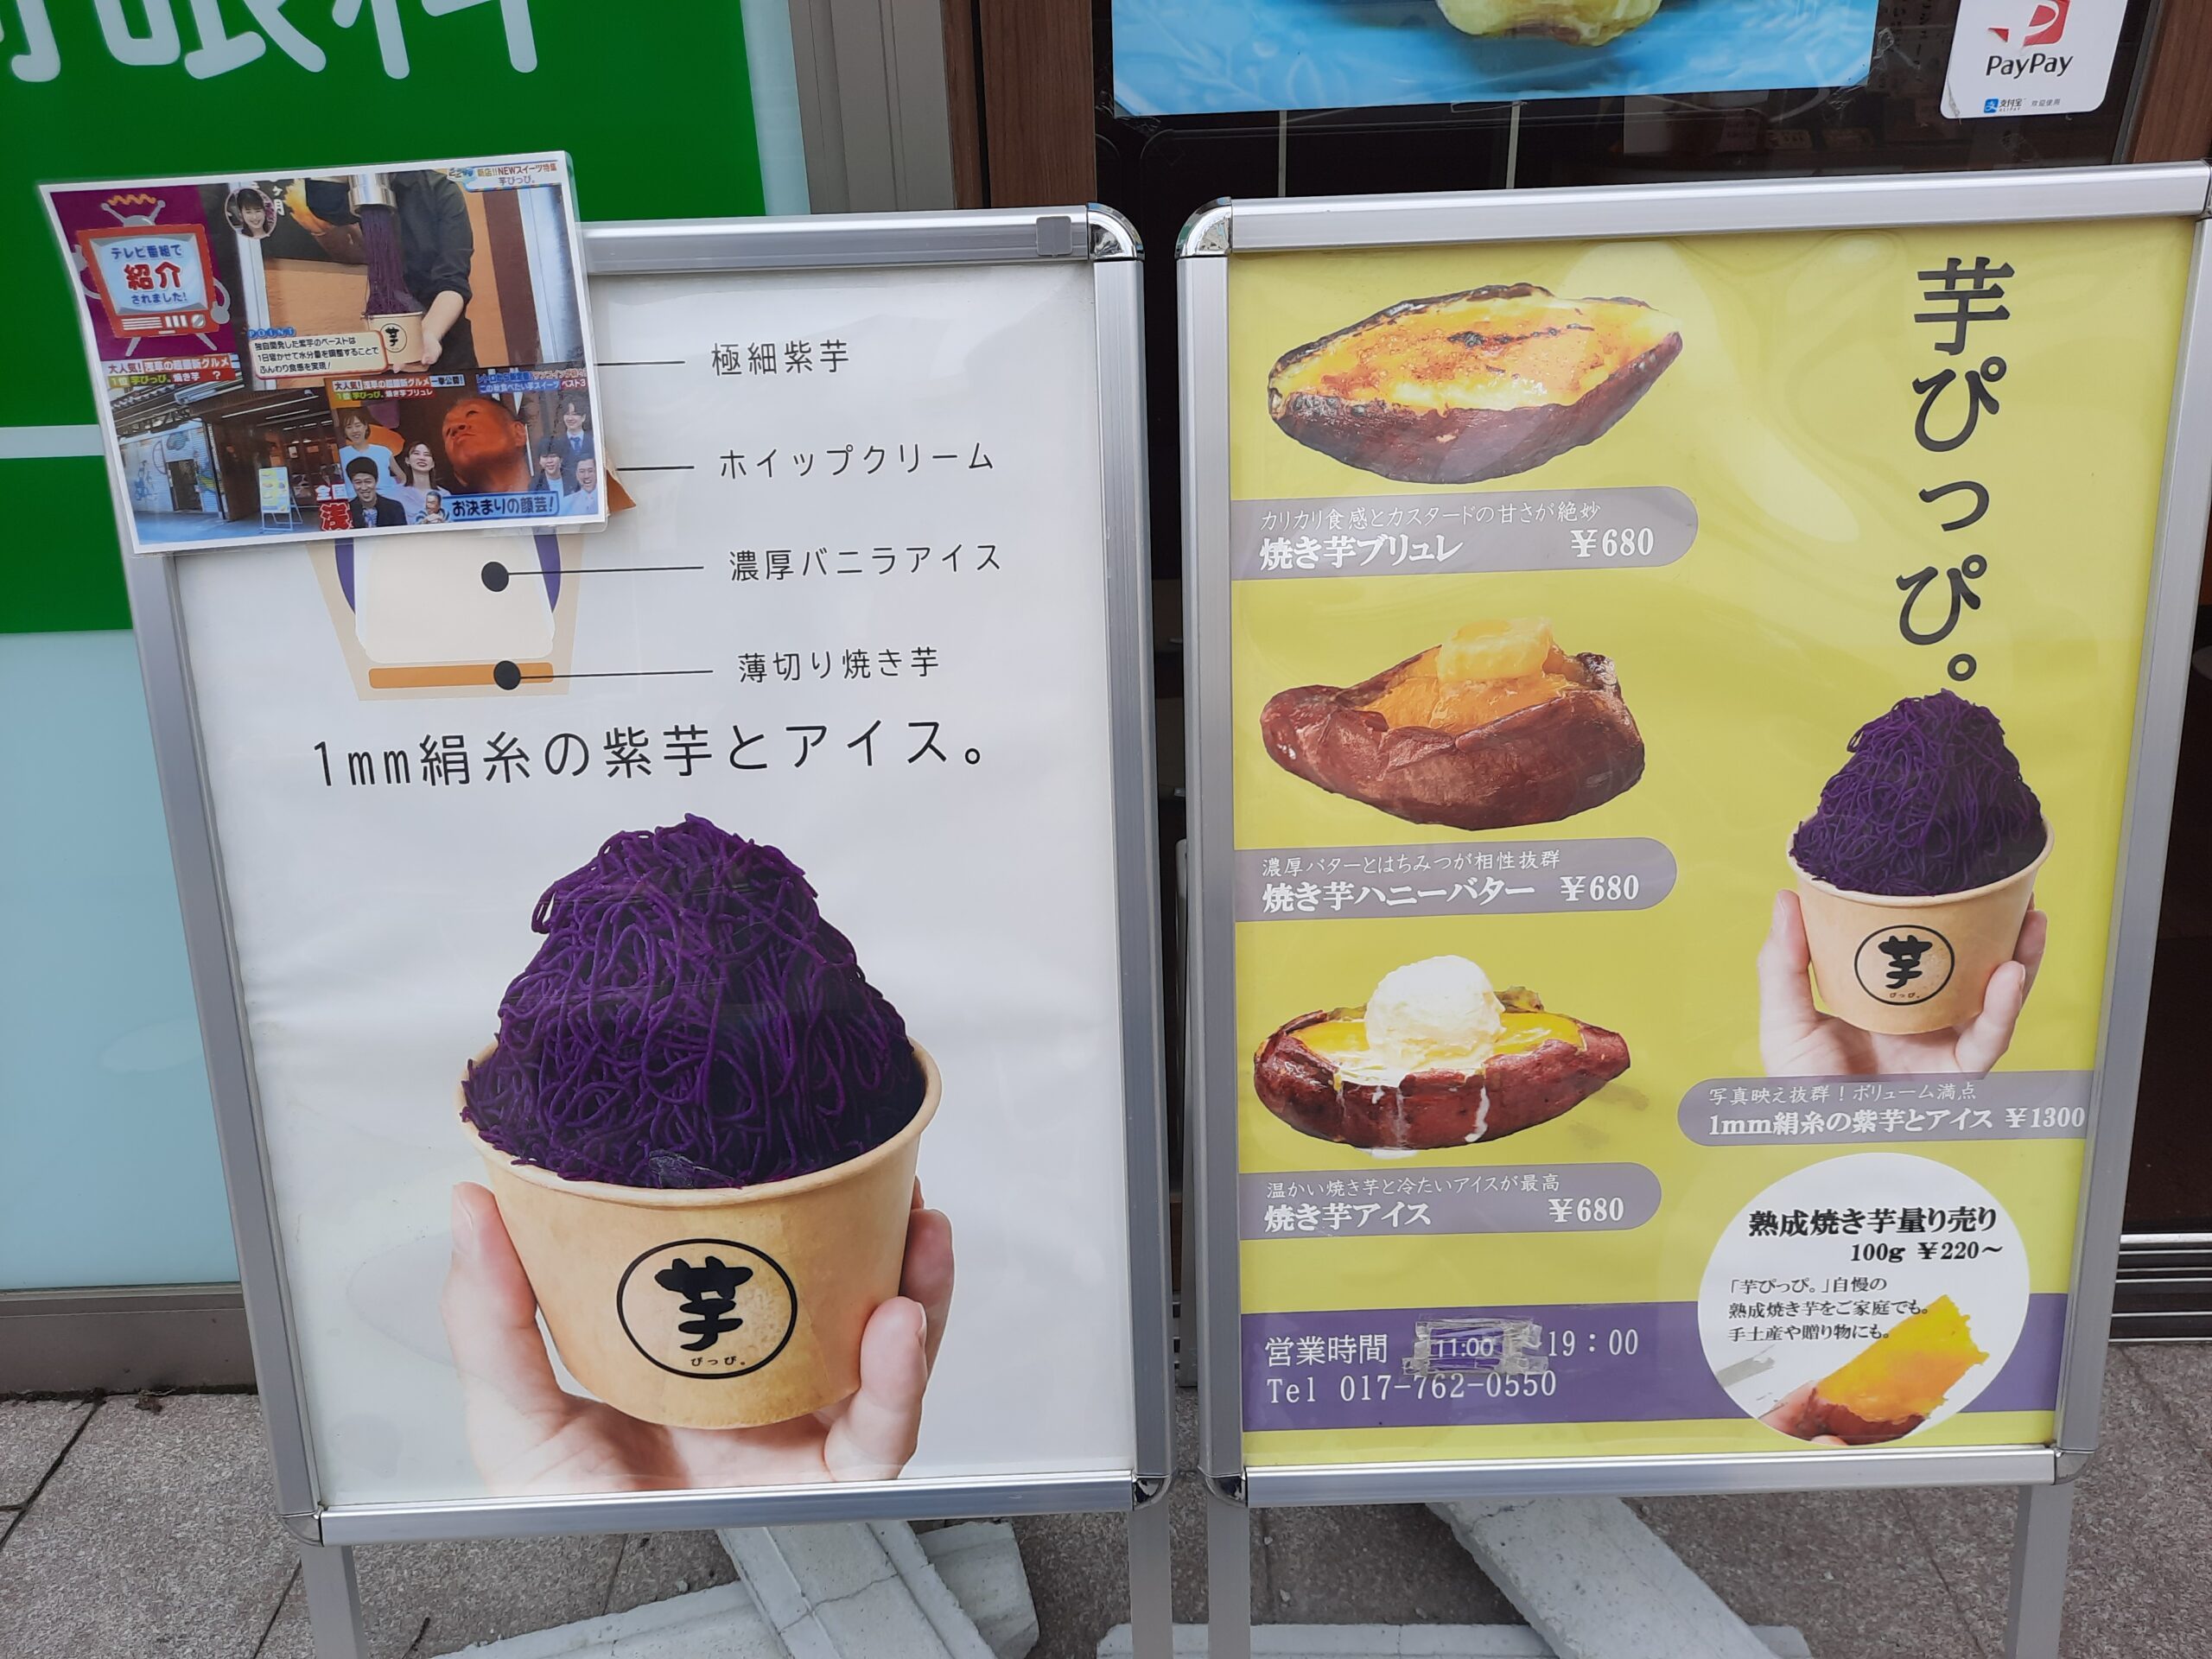 ‘Di nangangamote: Inspirations from Japan’s sweet potato industry